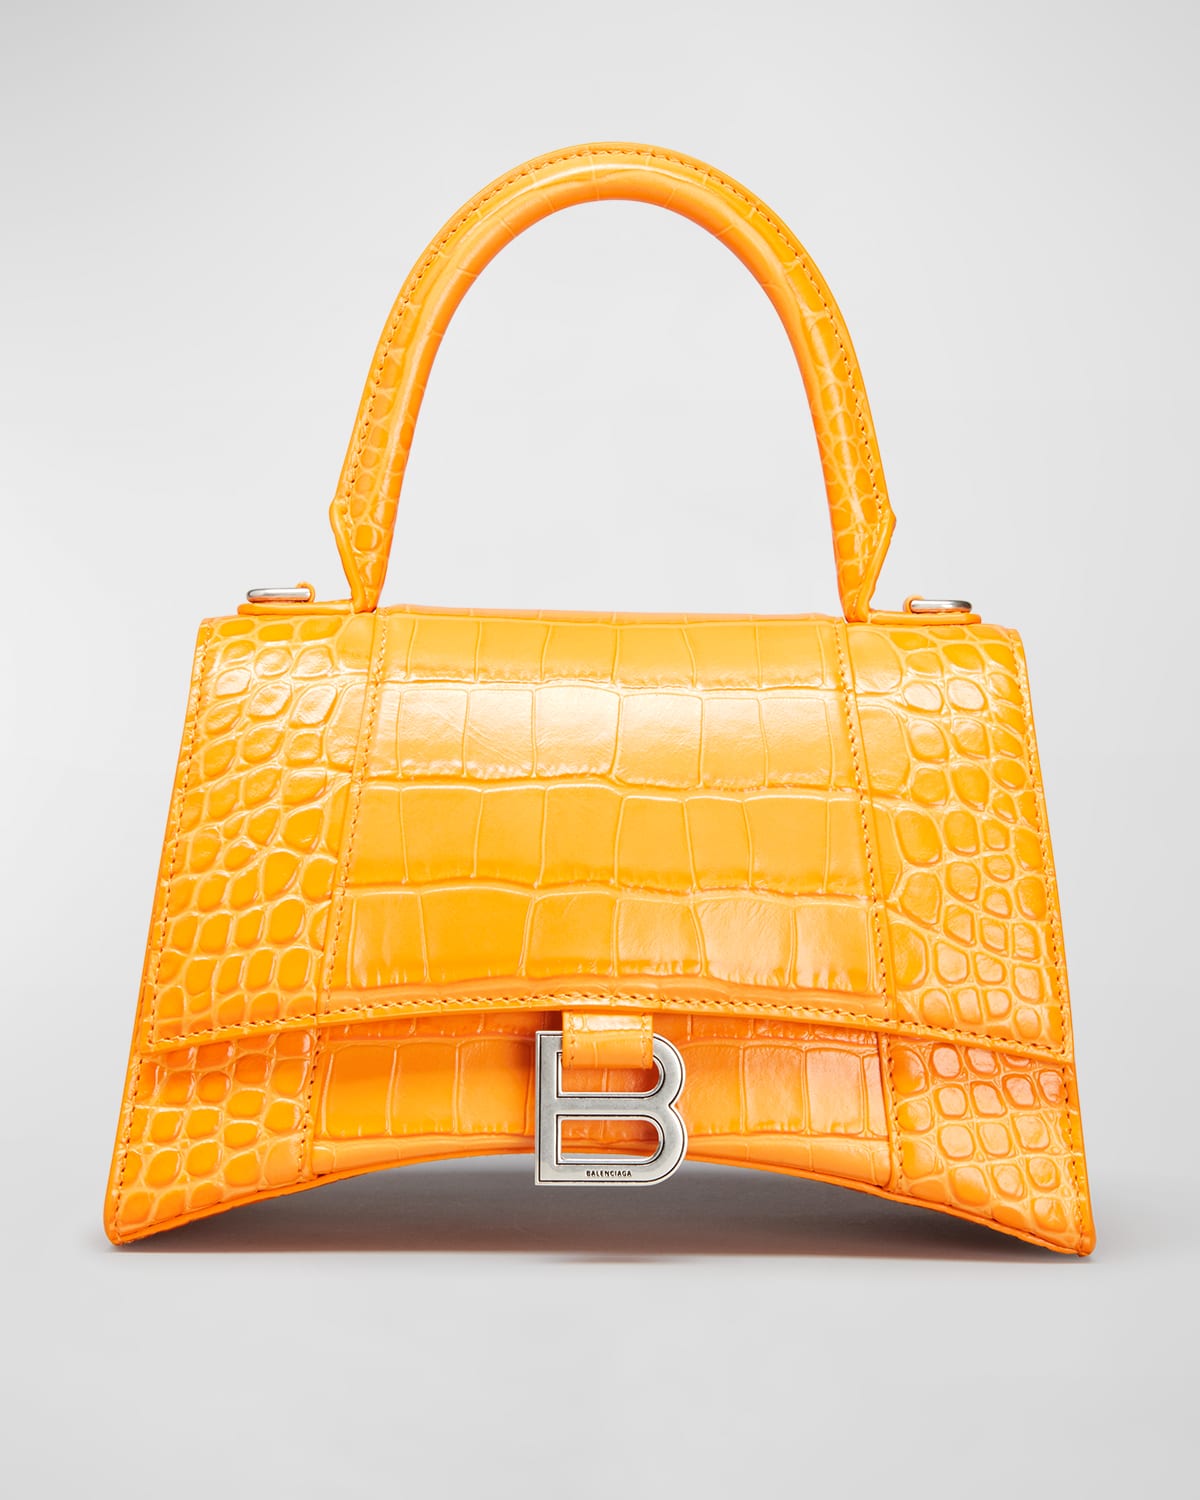 Balenciaga Hourglass Small Shiny Croc-embossed Top-handle Bag